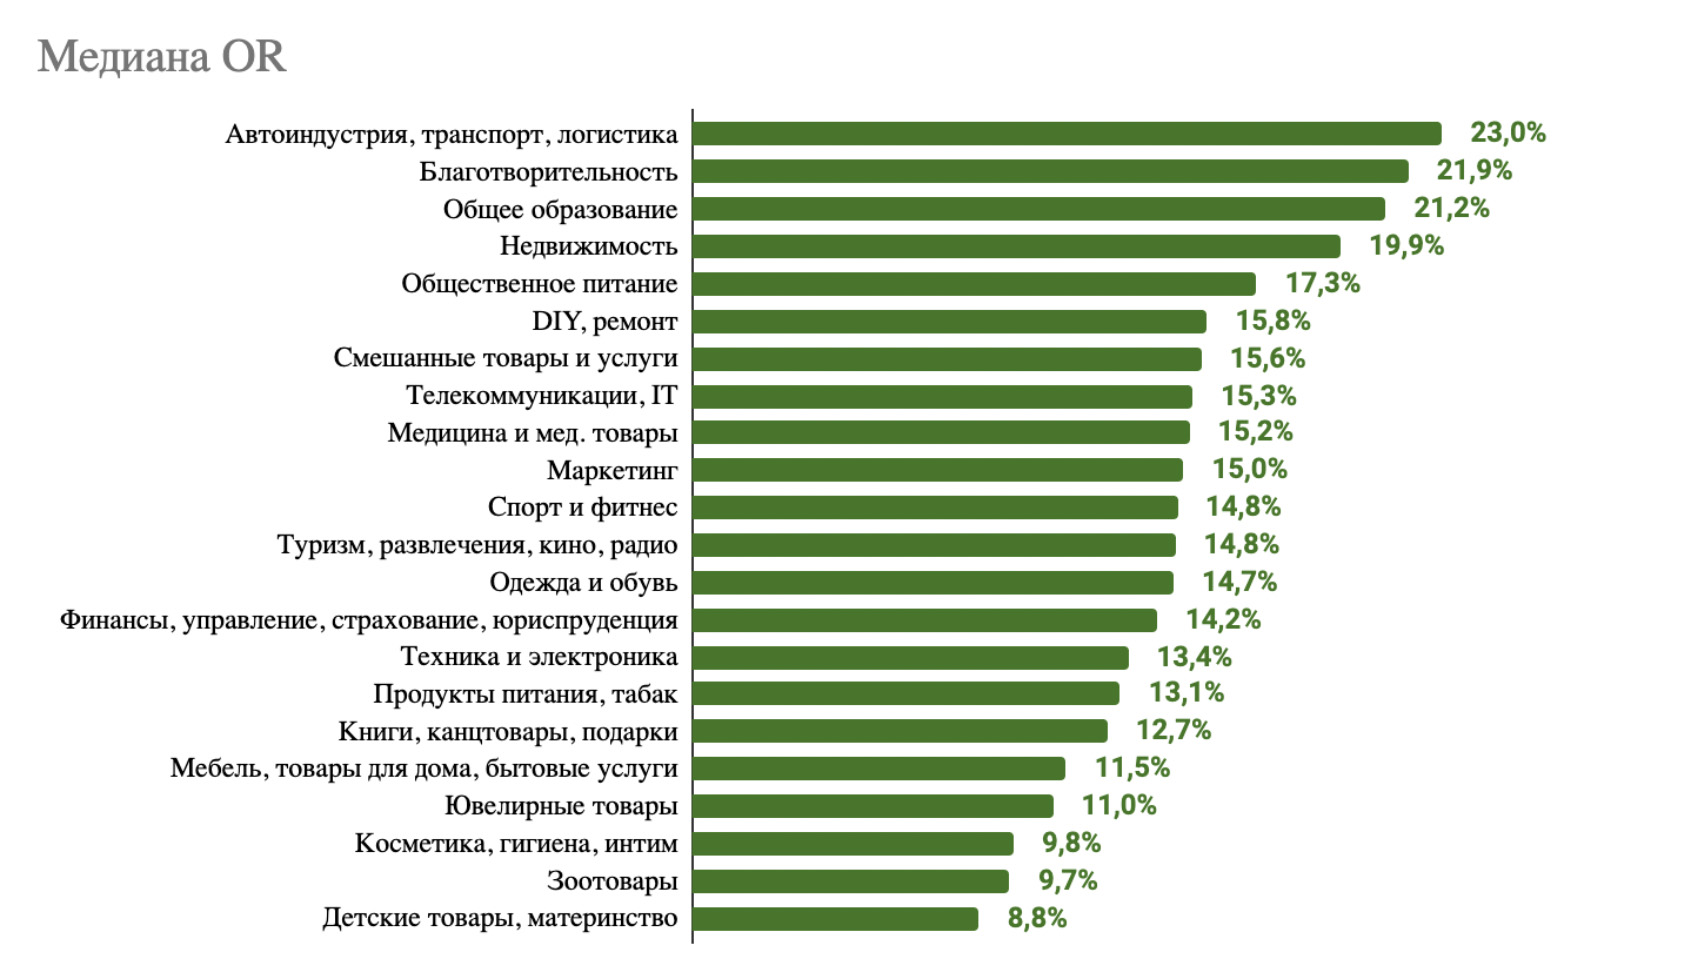 Какие email-рассылки российские пользователи открывают чаще всего